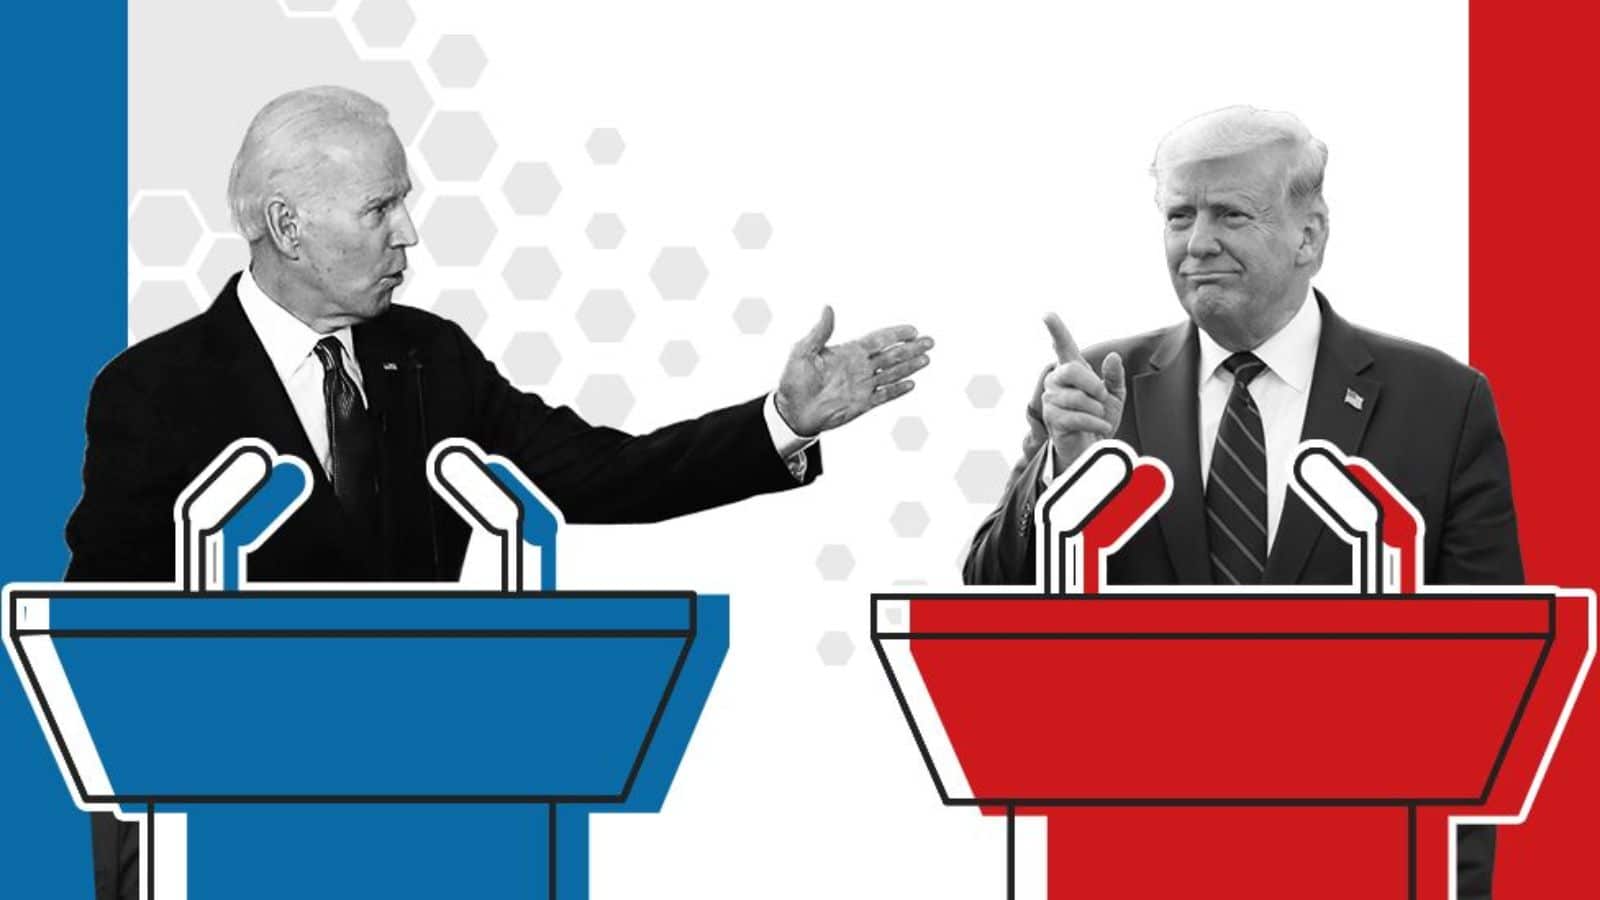 Presidential debate